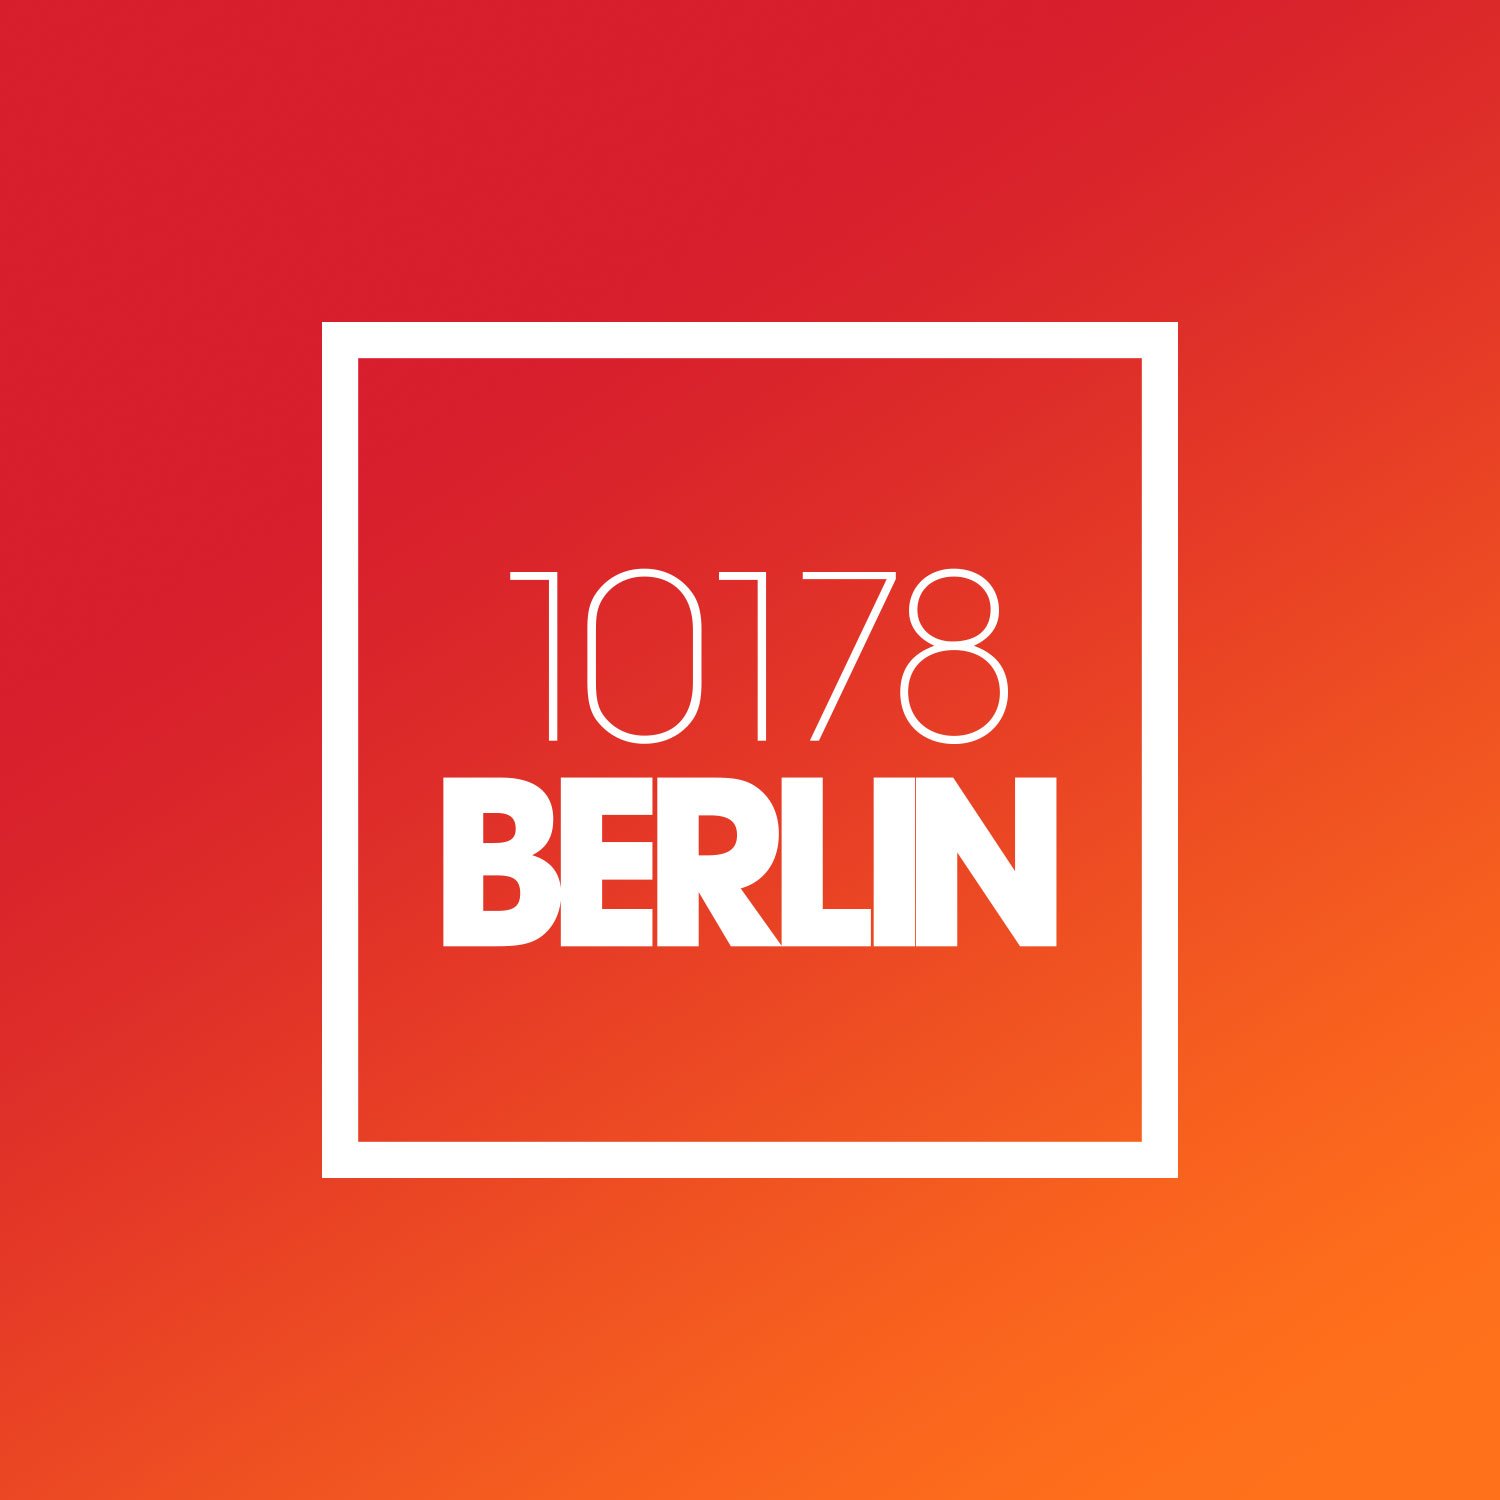 New-Balance-Berlin-Store-logo-2.jpg